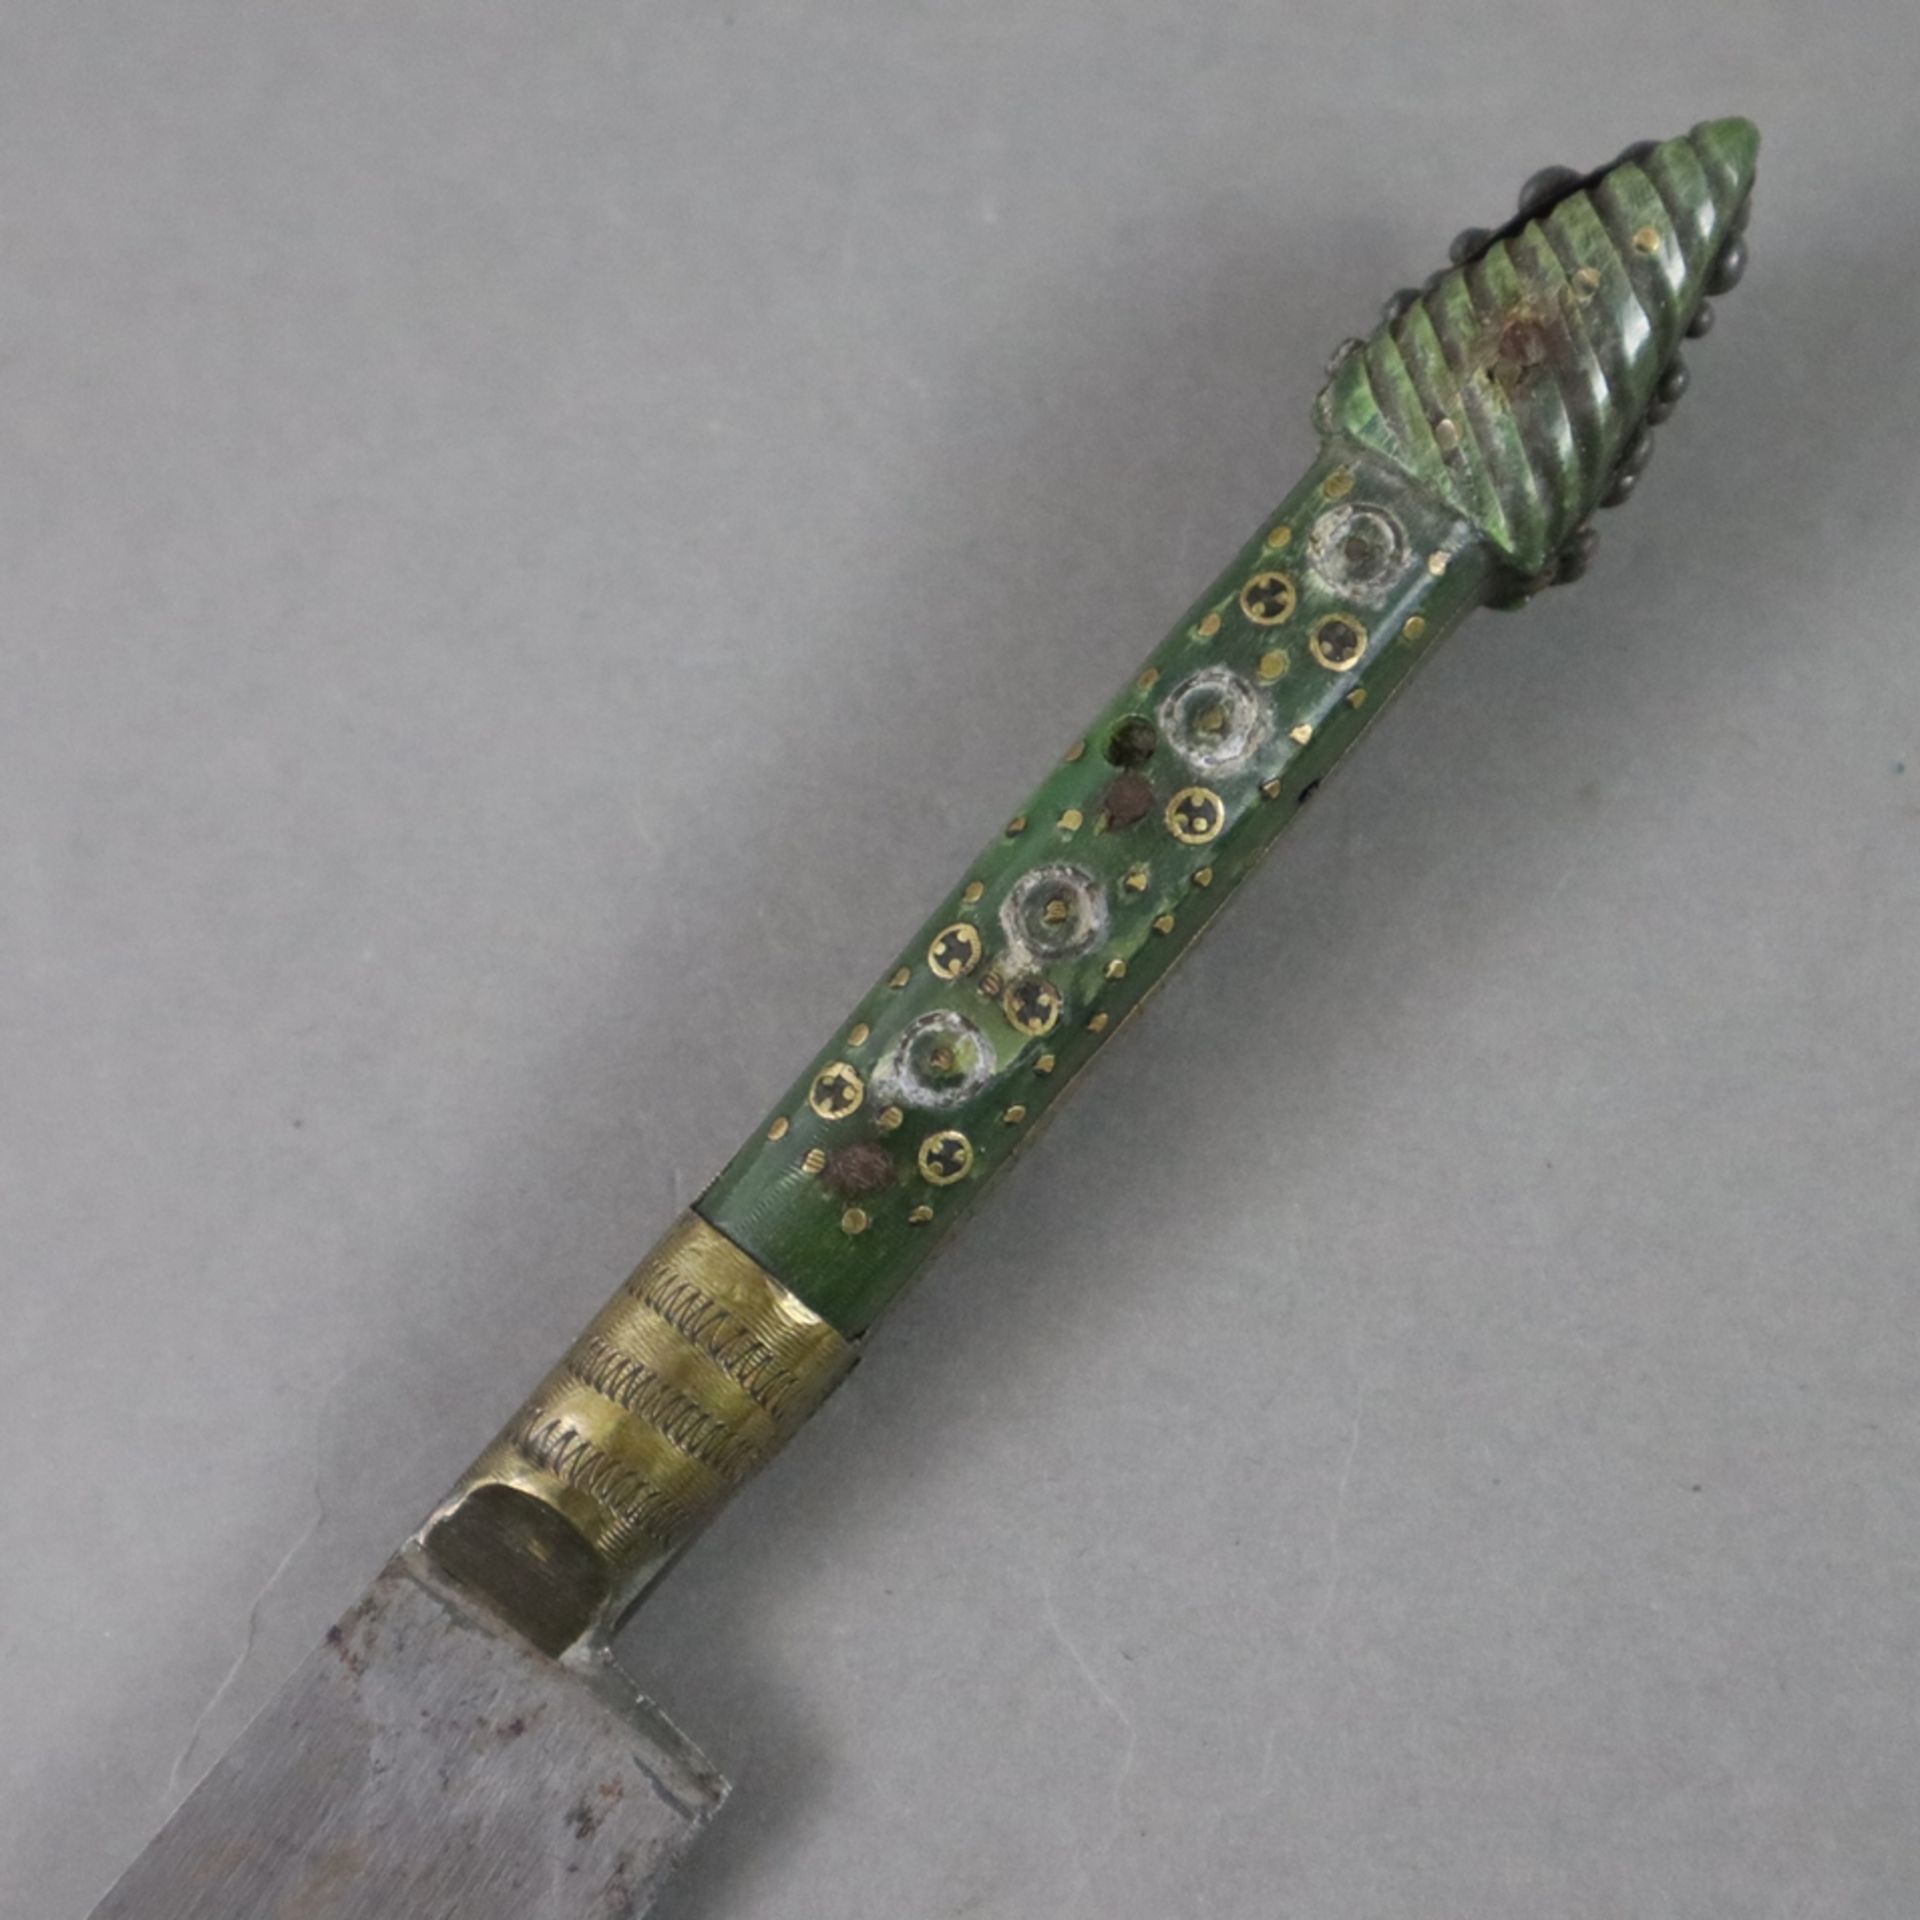 Dolch/Kard - osmanisch, feste Rückenklinge gemarkt, schmaler intarsierter Griff aus grüner Jade, ge - Bild 2 aus 5